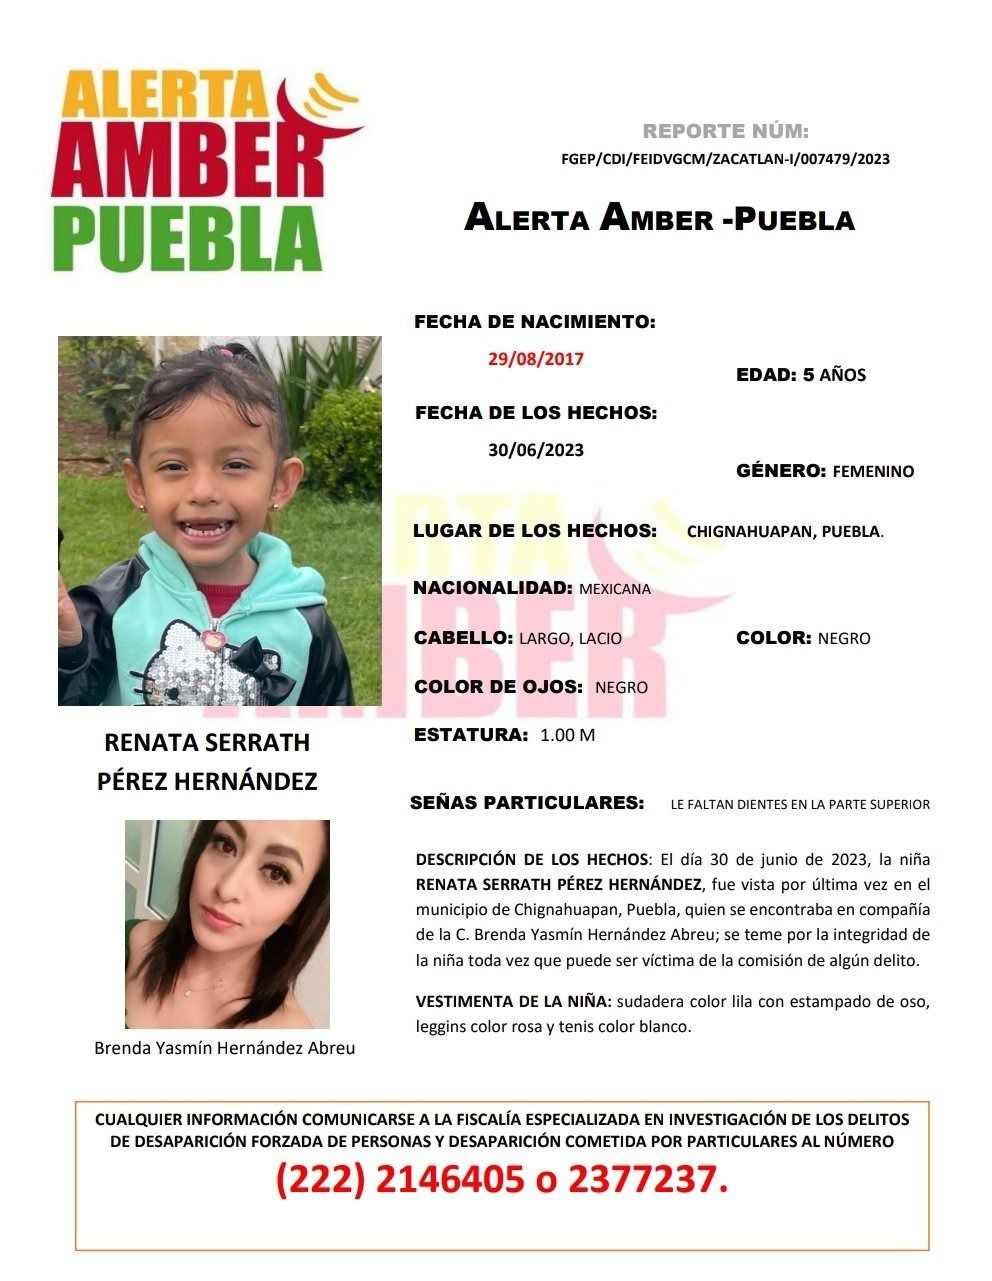 SE BUSCA: tres hermanitos desaparecen en Chiganahuapan, estaban con su mamá